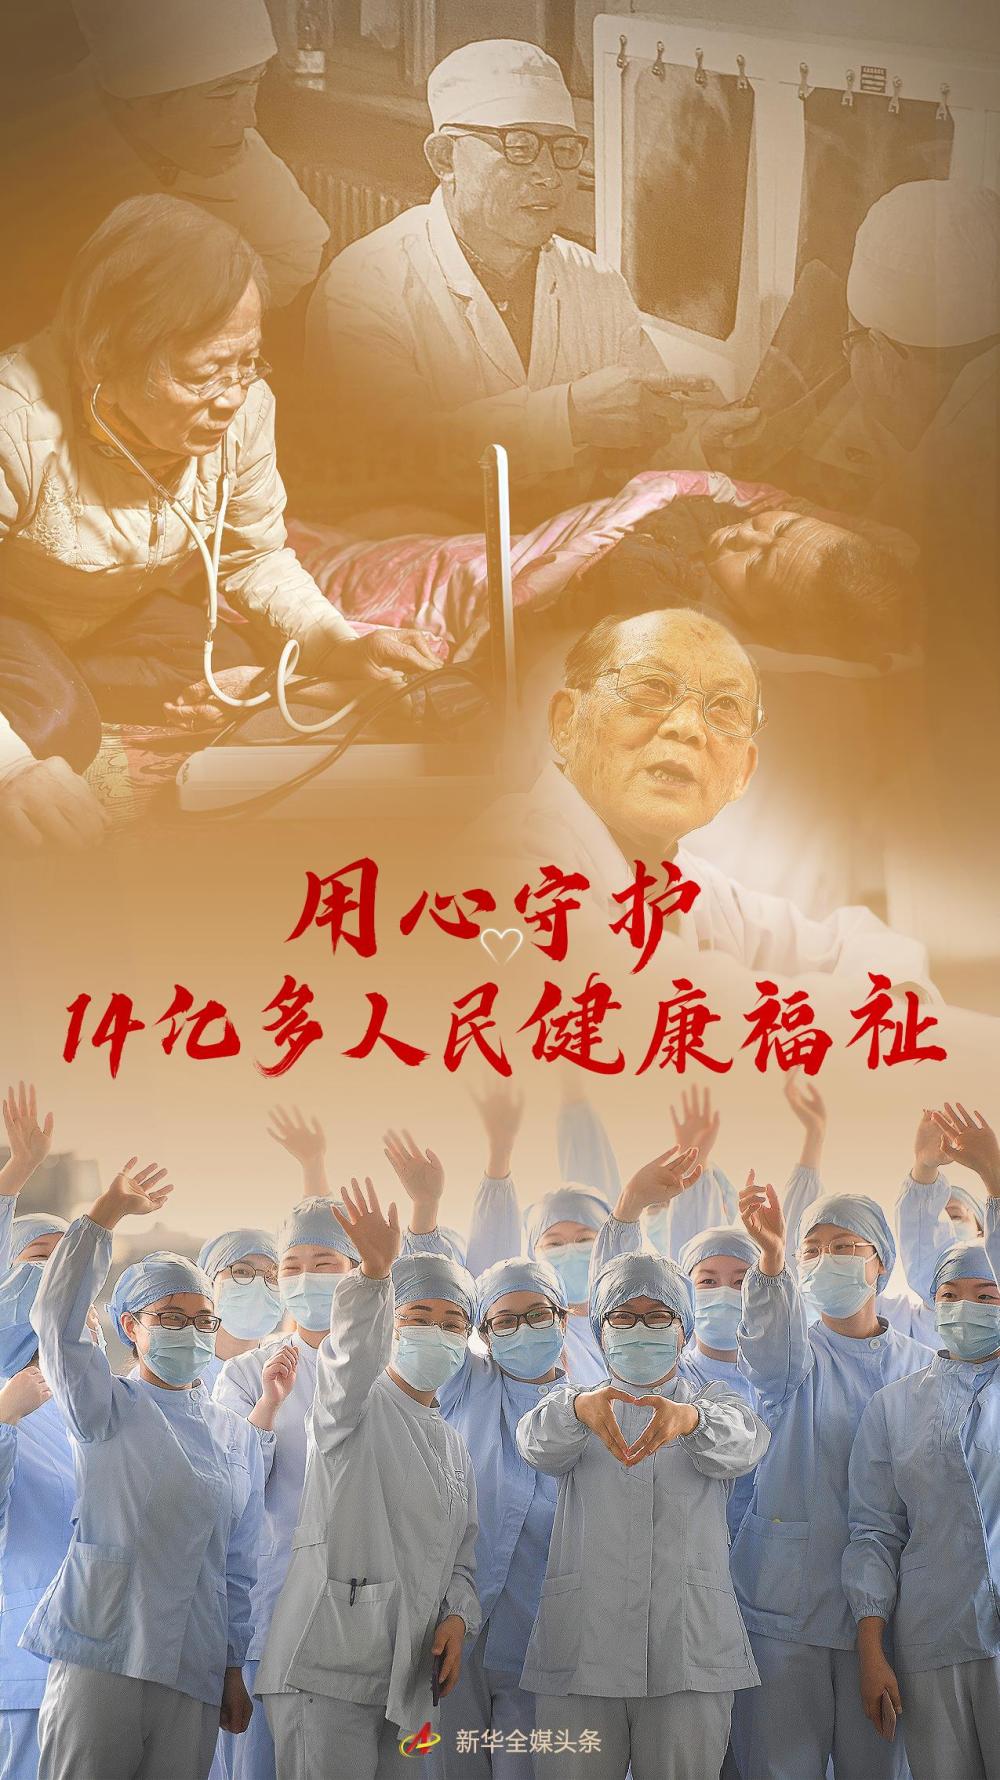 用心守护14亿多人民健康福祉——写在第五个中国医师节到来之际